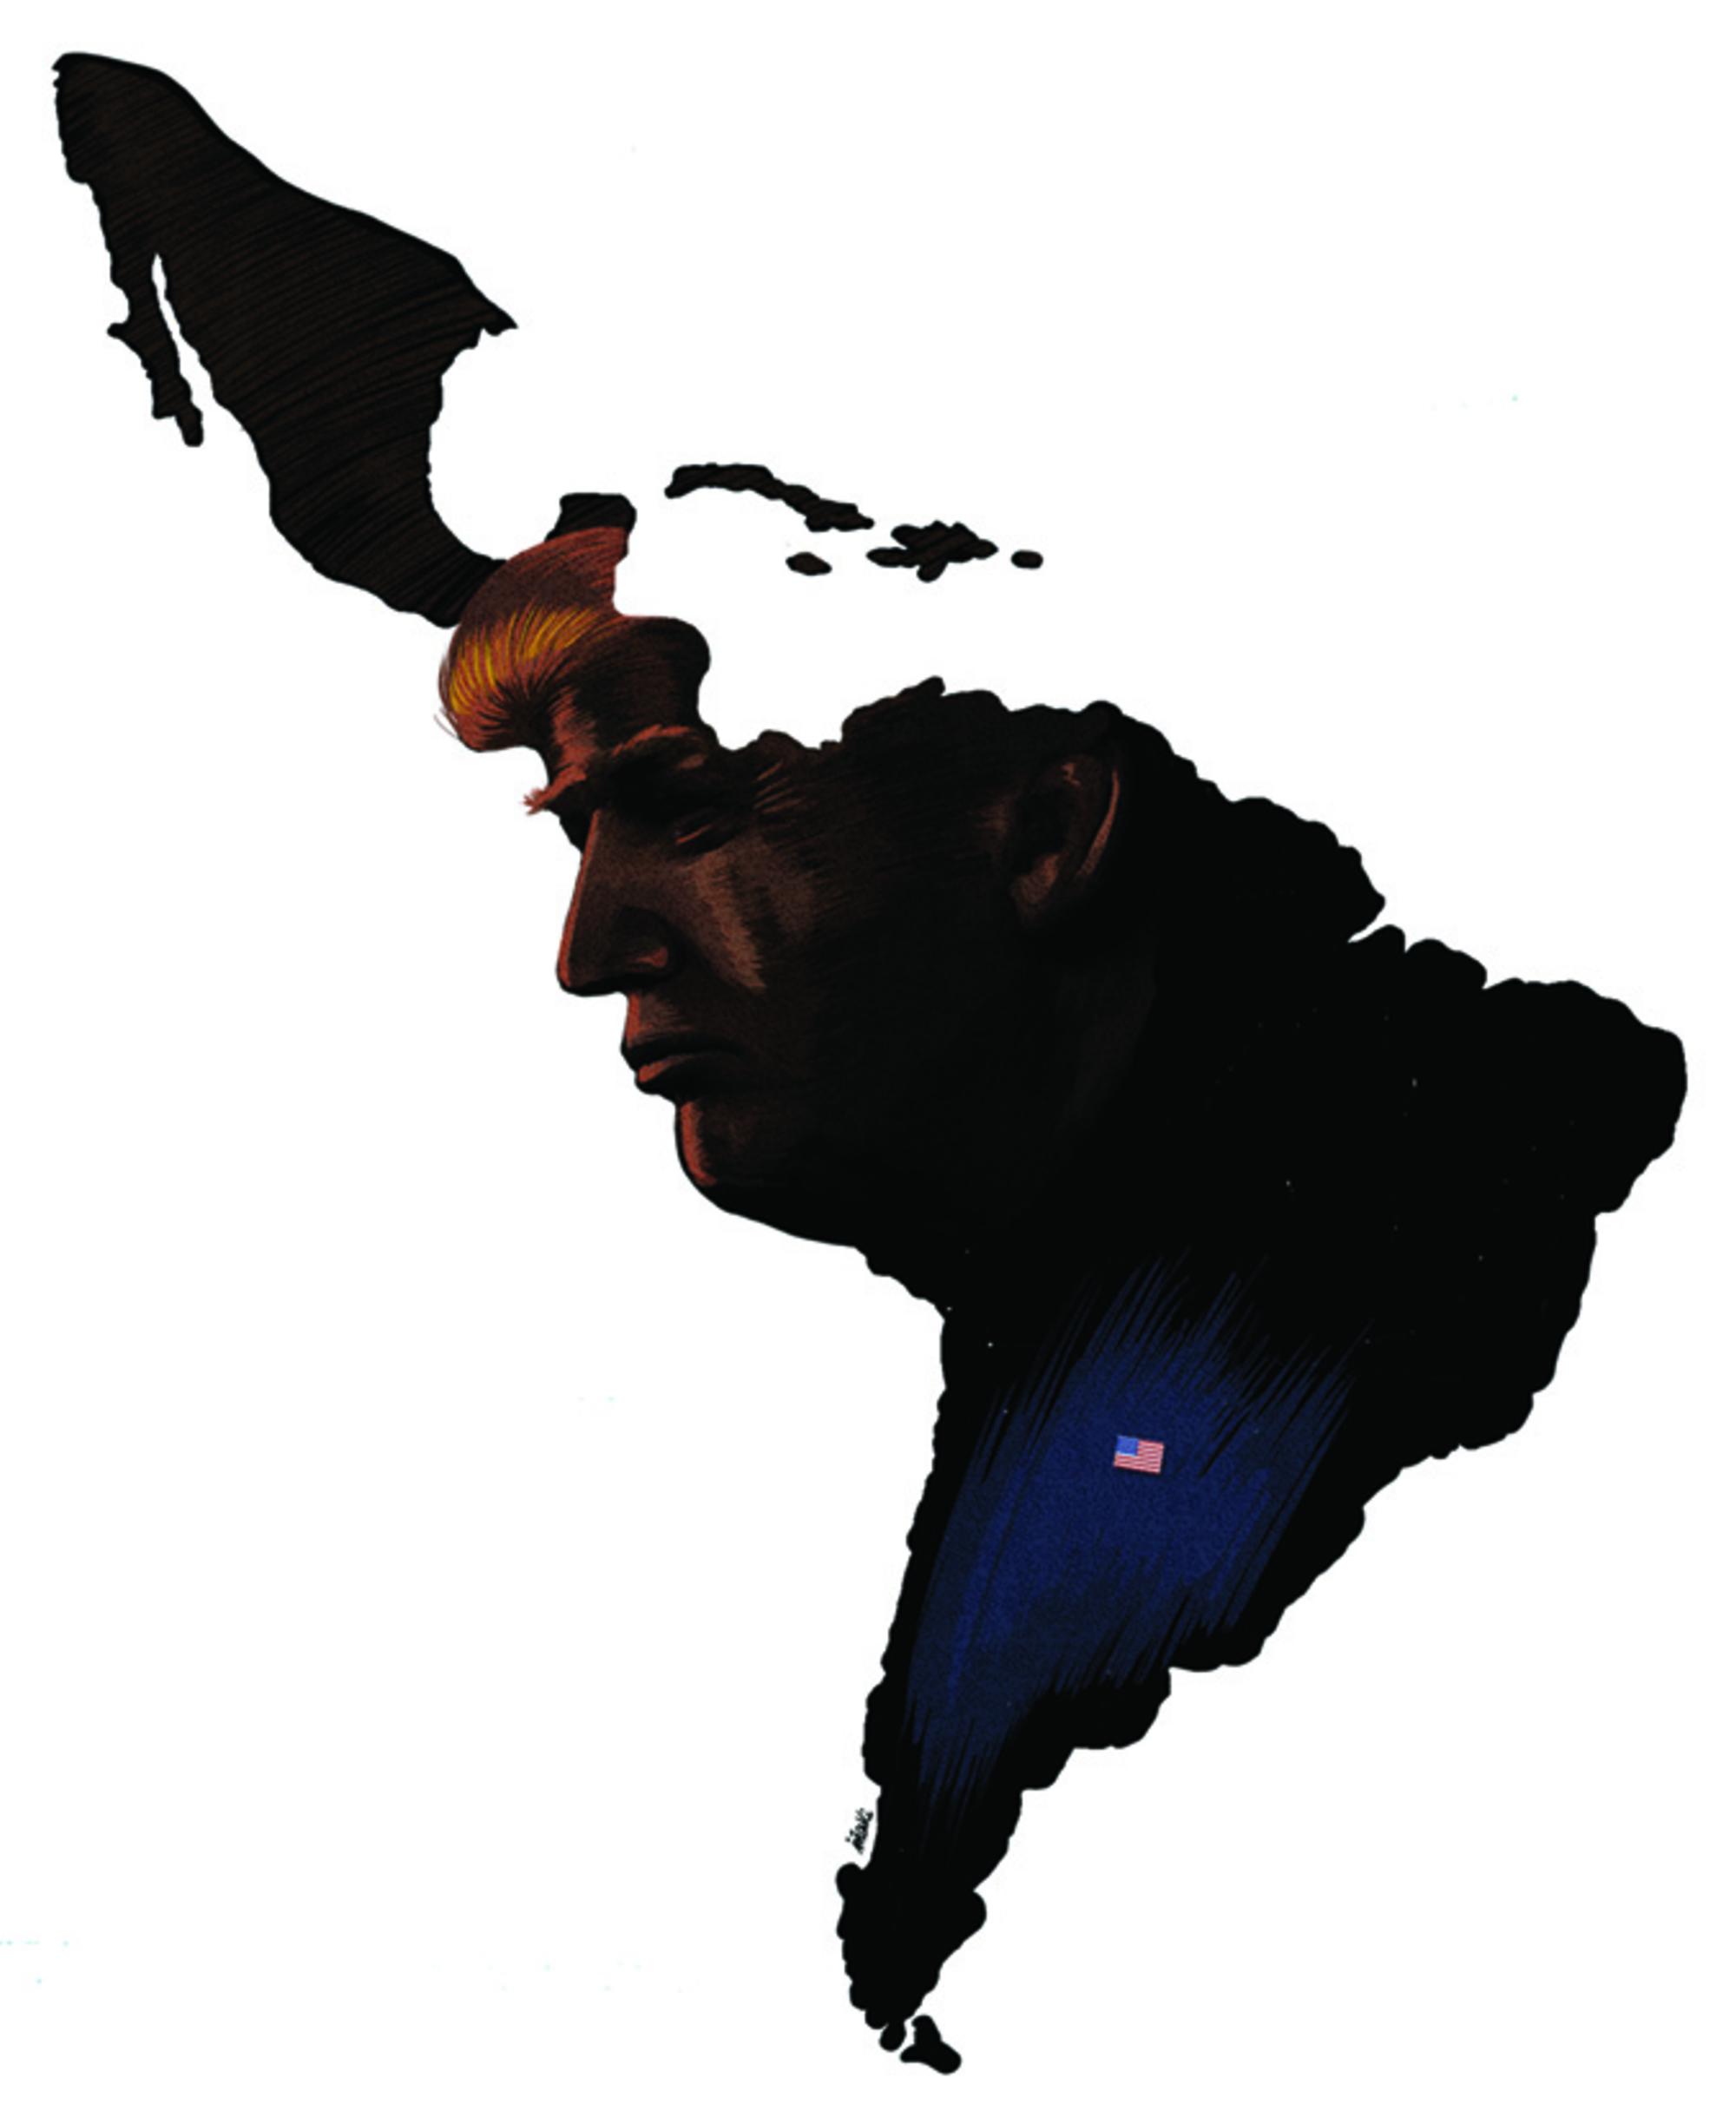 Ilustración de Iñaki Landa para el artículo "Antitrumpismo y nacionalismos en América Latina" del nº 74 de la Revista Pueblos